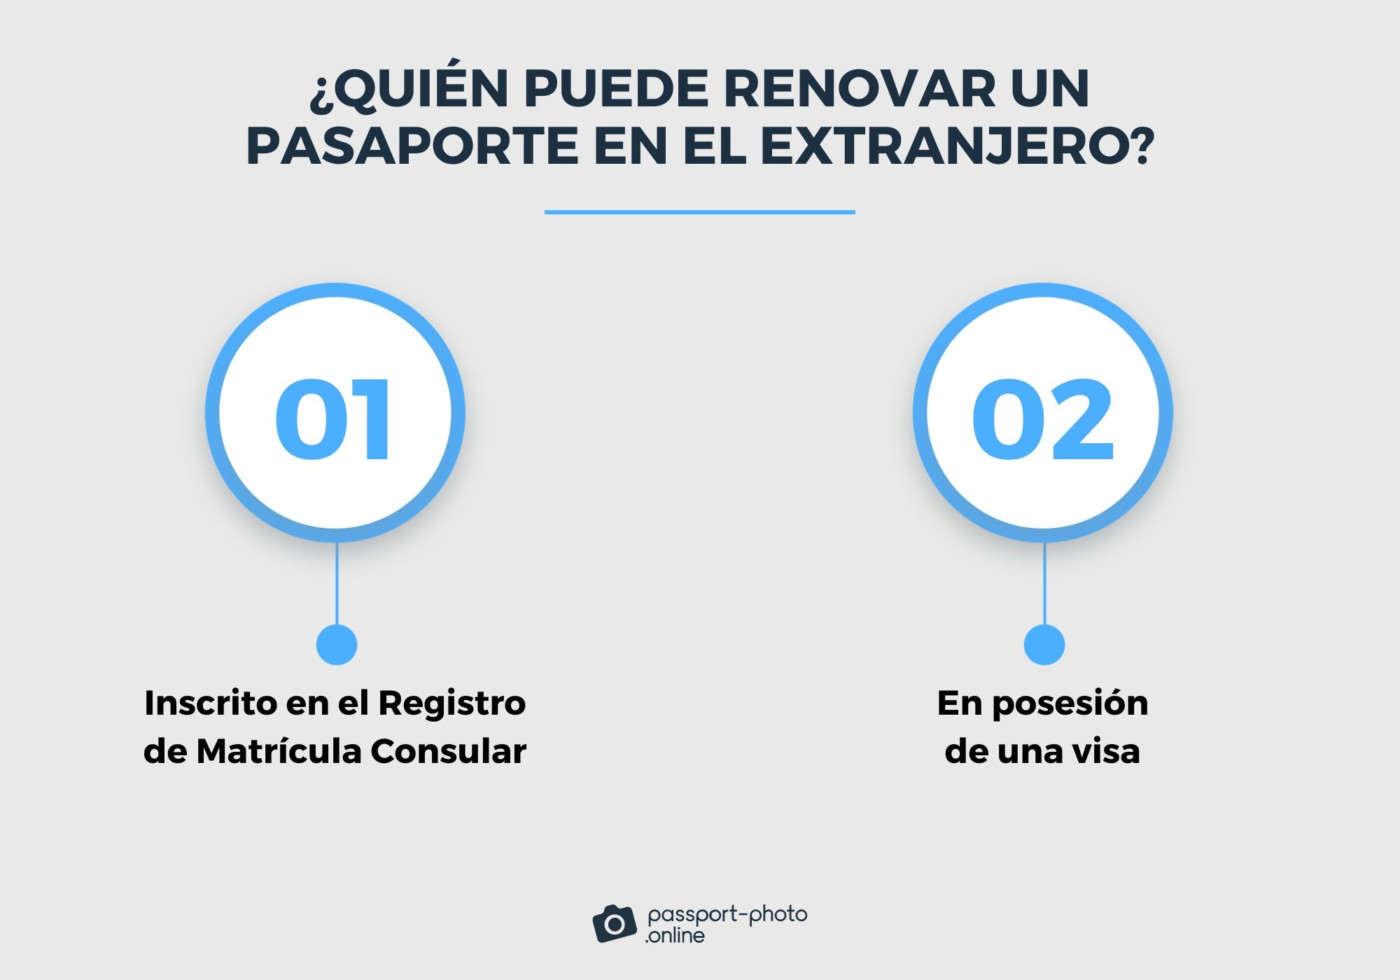 Una infografía destaca quiénes pueden renovar un pasaporte en el extranjero, señalando tan solo dos opciones. Los colores grises y azulados predominan.